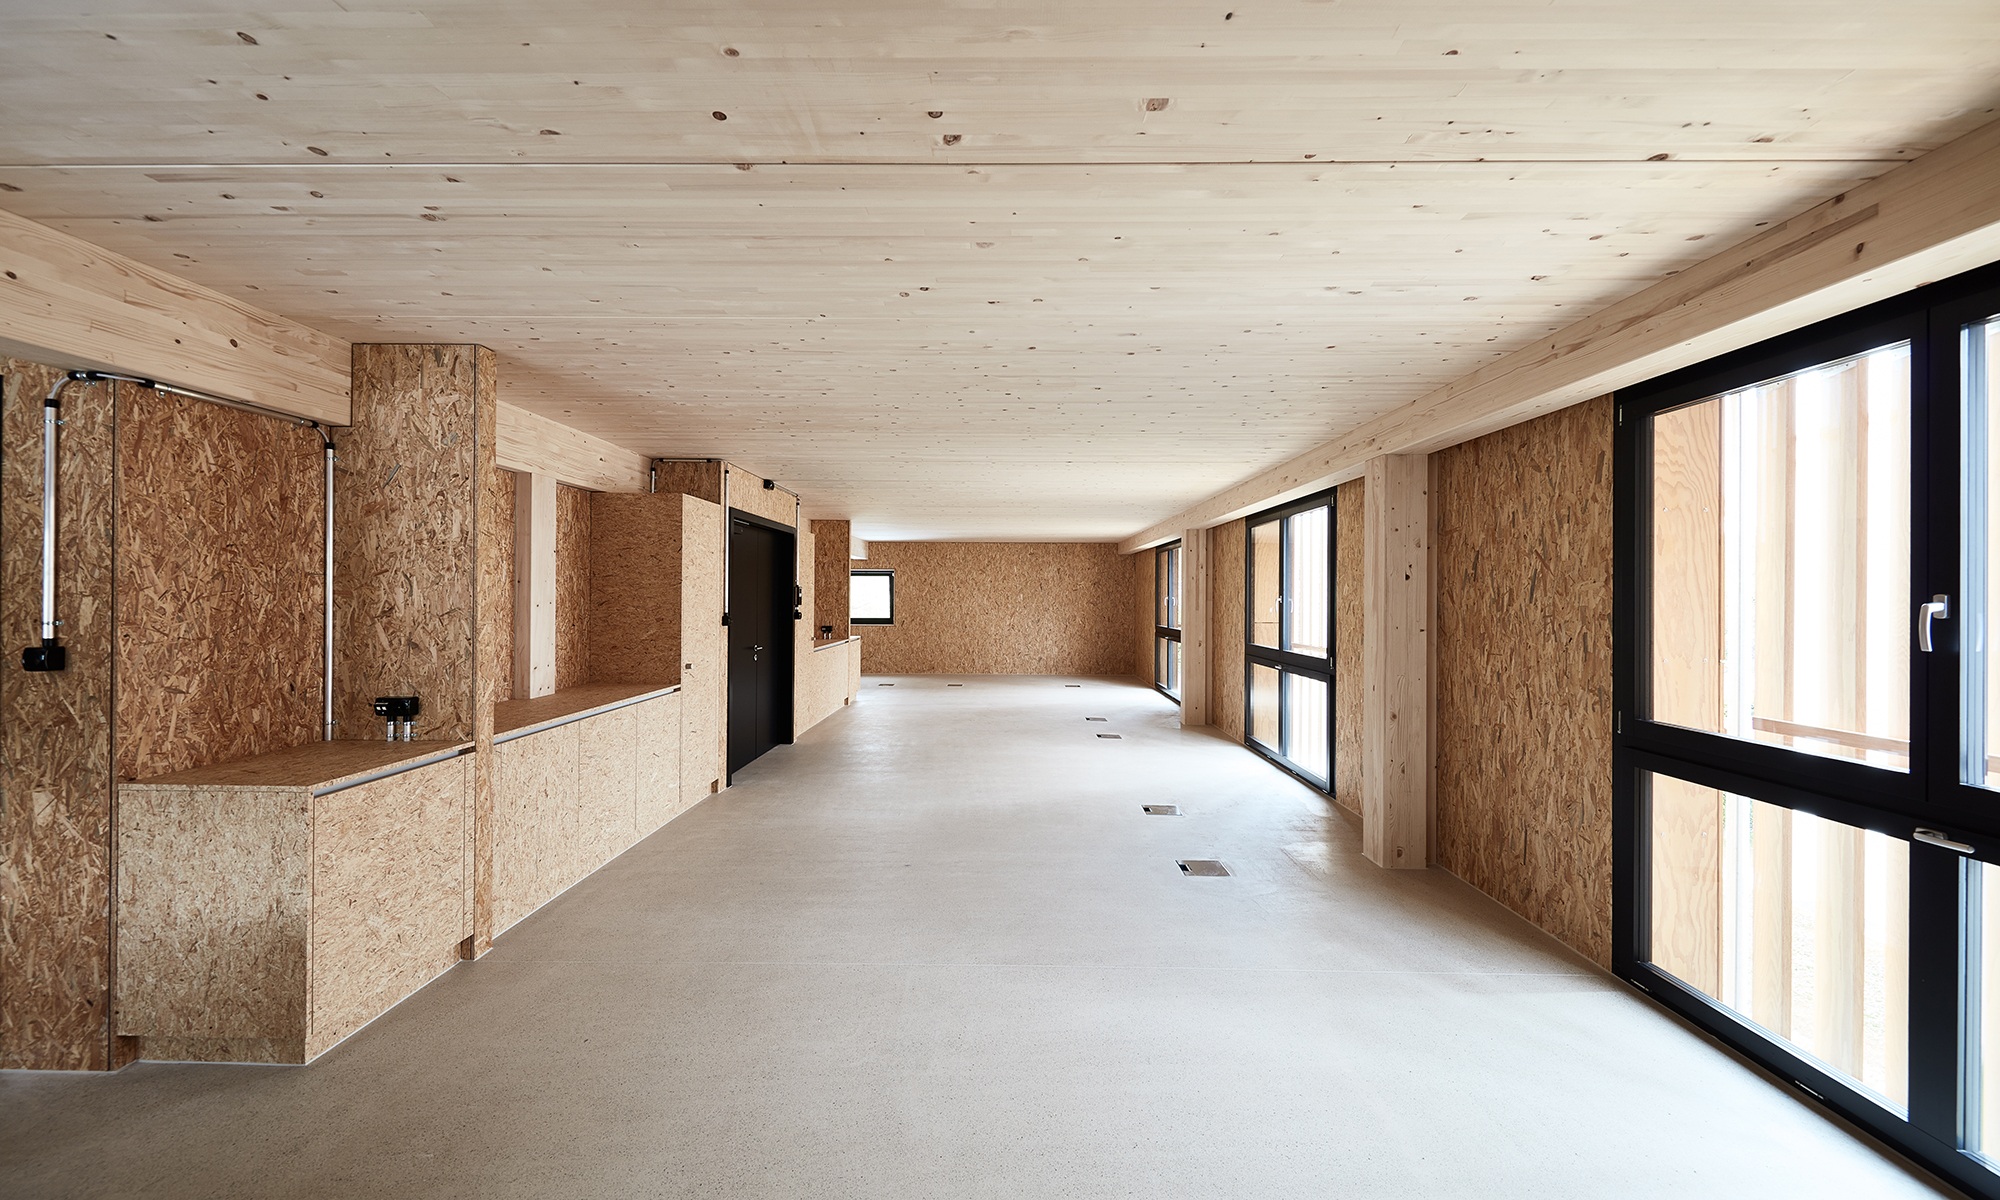 Innenbereich der Industriehalle mit Innenausbau in Holz und Fussboden aus Beton